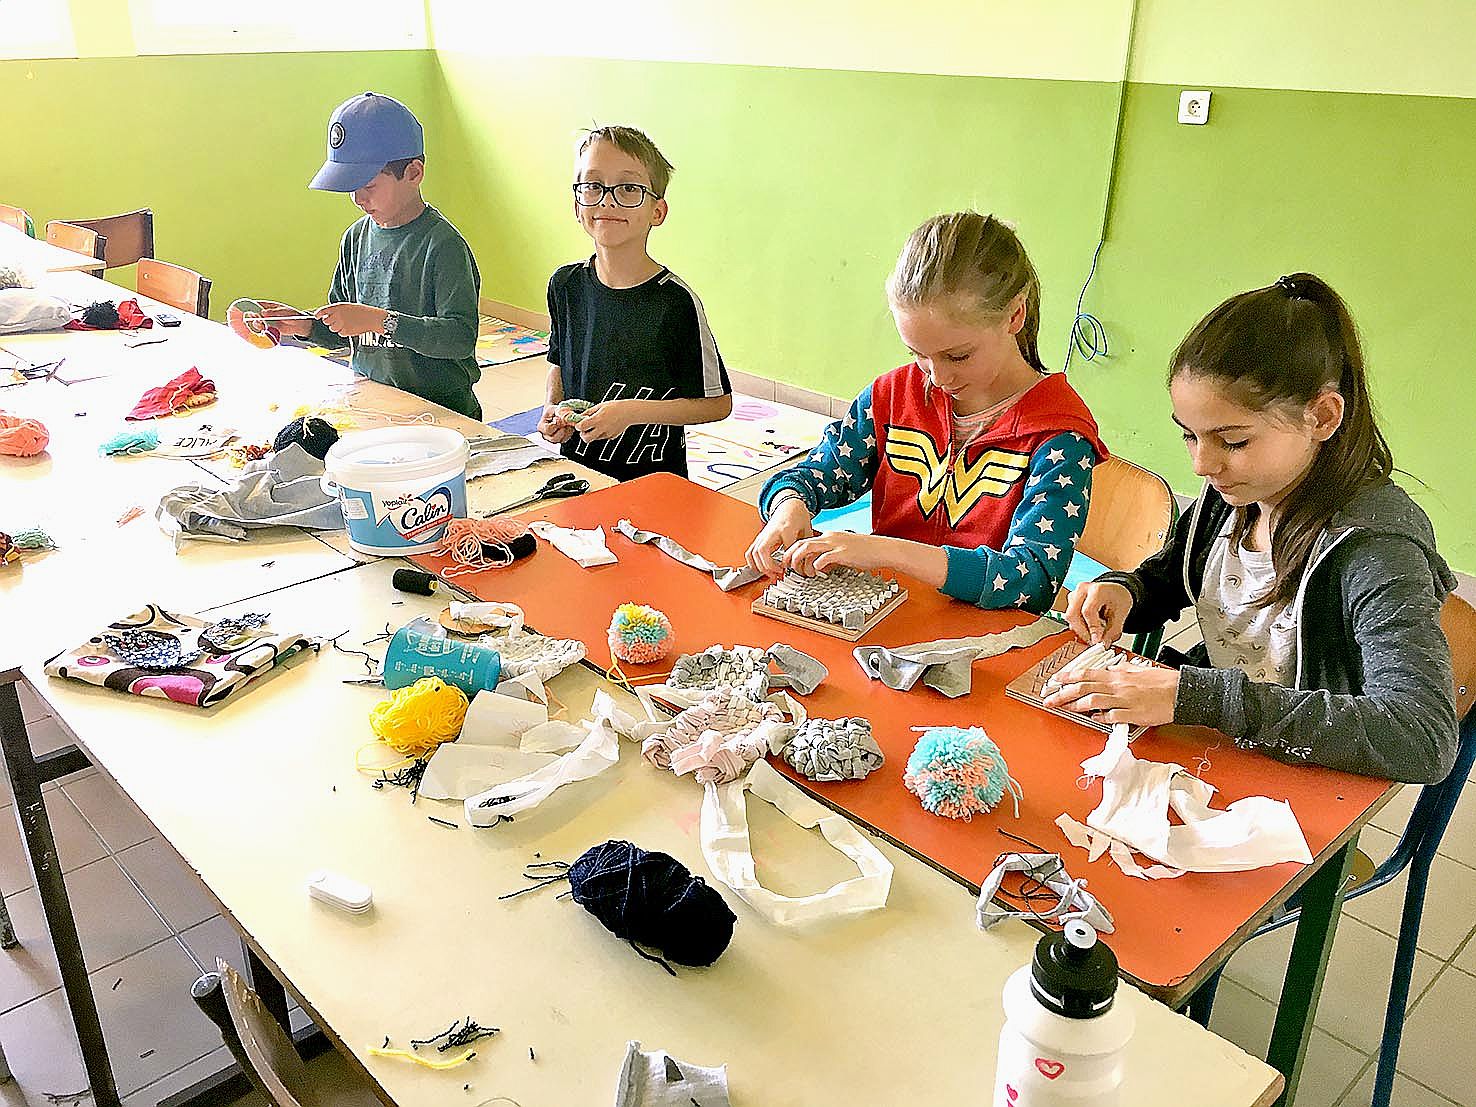 Basée au collège Champagnat, l’association Daovi a proposé des animations variées aux enfants. Mercredi, un petit groupe s’est essayé à la couture, à la fabrication tawashi notamment, des éponges à vaisselle réalisées à partir de tissu récupéré.